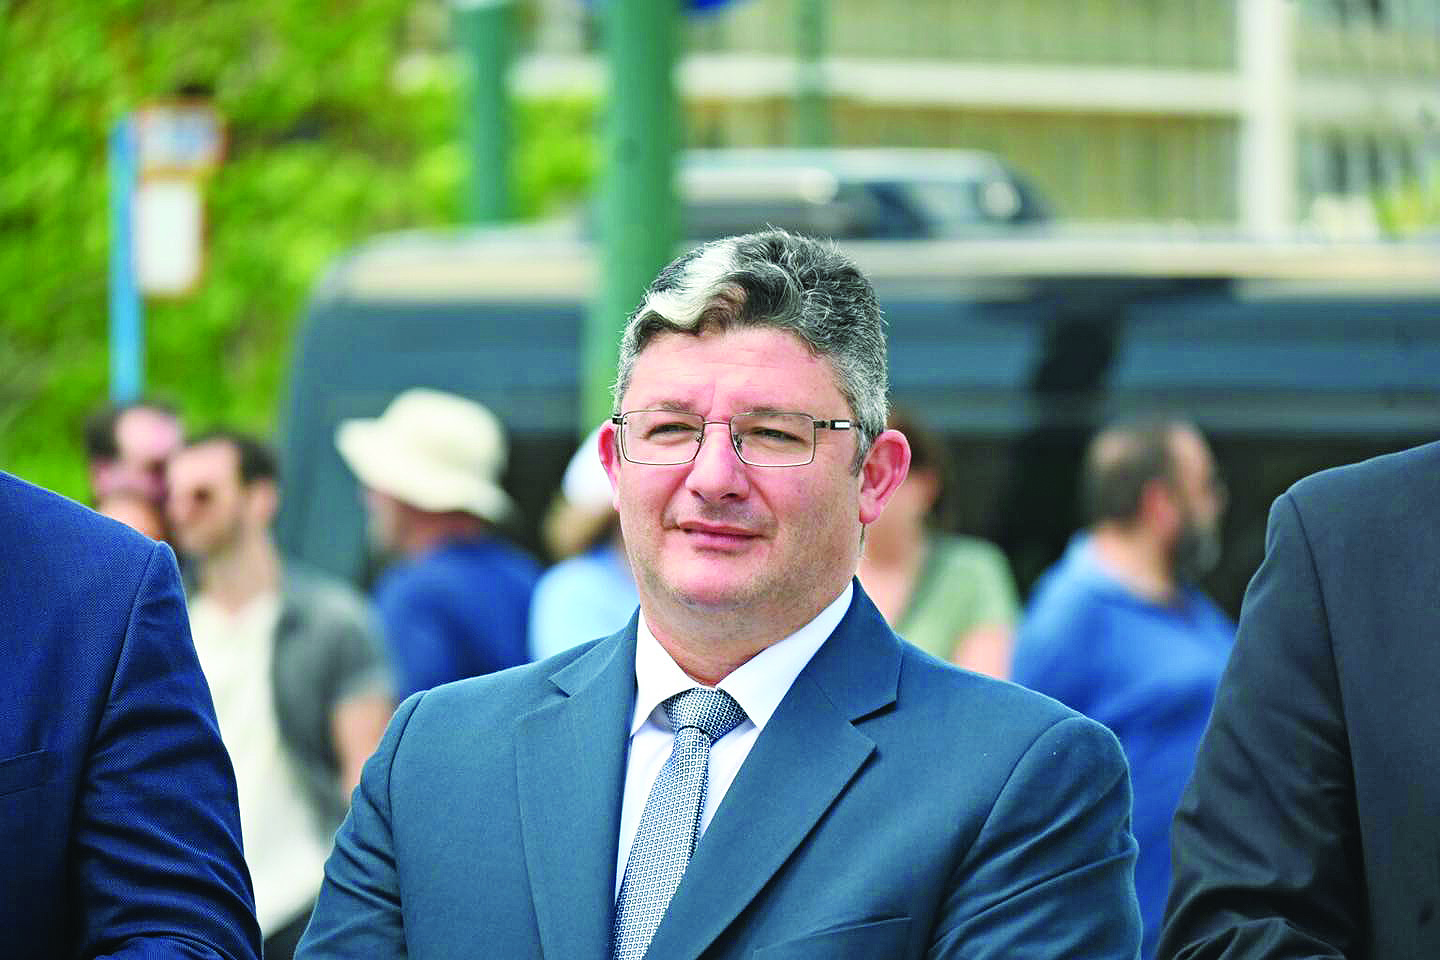 Σπύρος Βρεττός: «Ο κόσμος θα ανταμείψει στις κάλπες την προσπάθειά μας» - Ο δήμαρχος Αχαρνών στη "ΜΠΑΜ στο ρεπορτάζ"